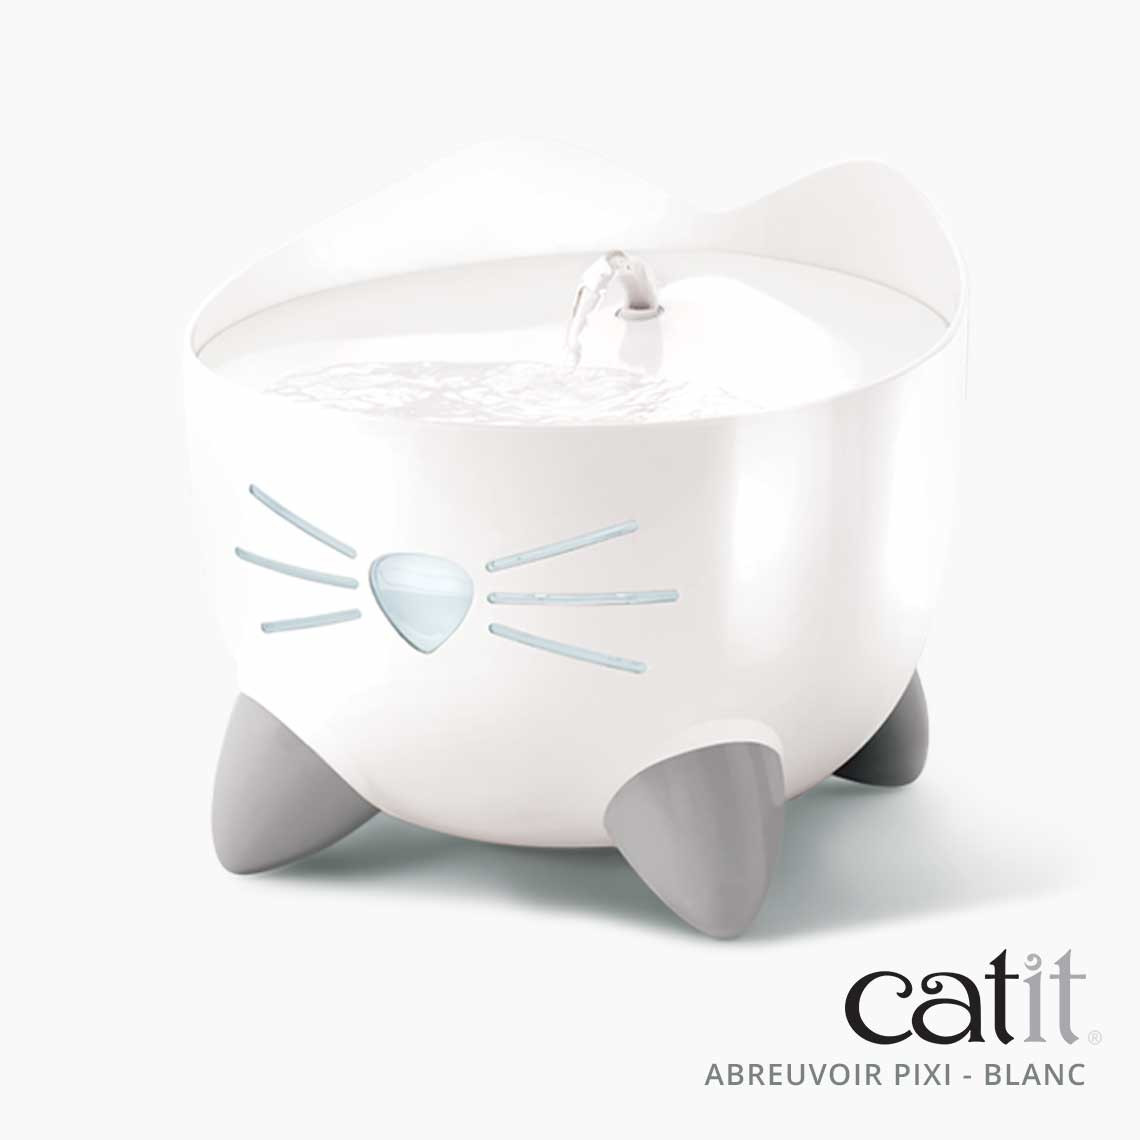 Fontaine à eau pour chat : meilleure fontaine, céramique, inox